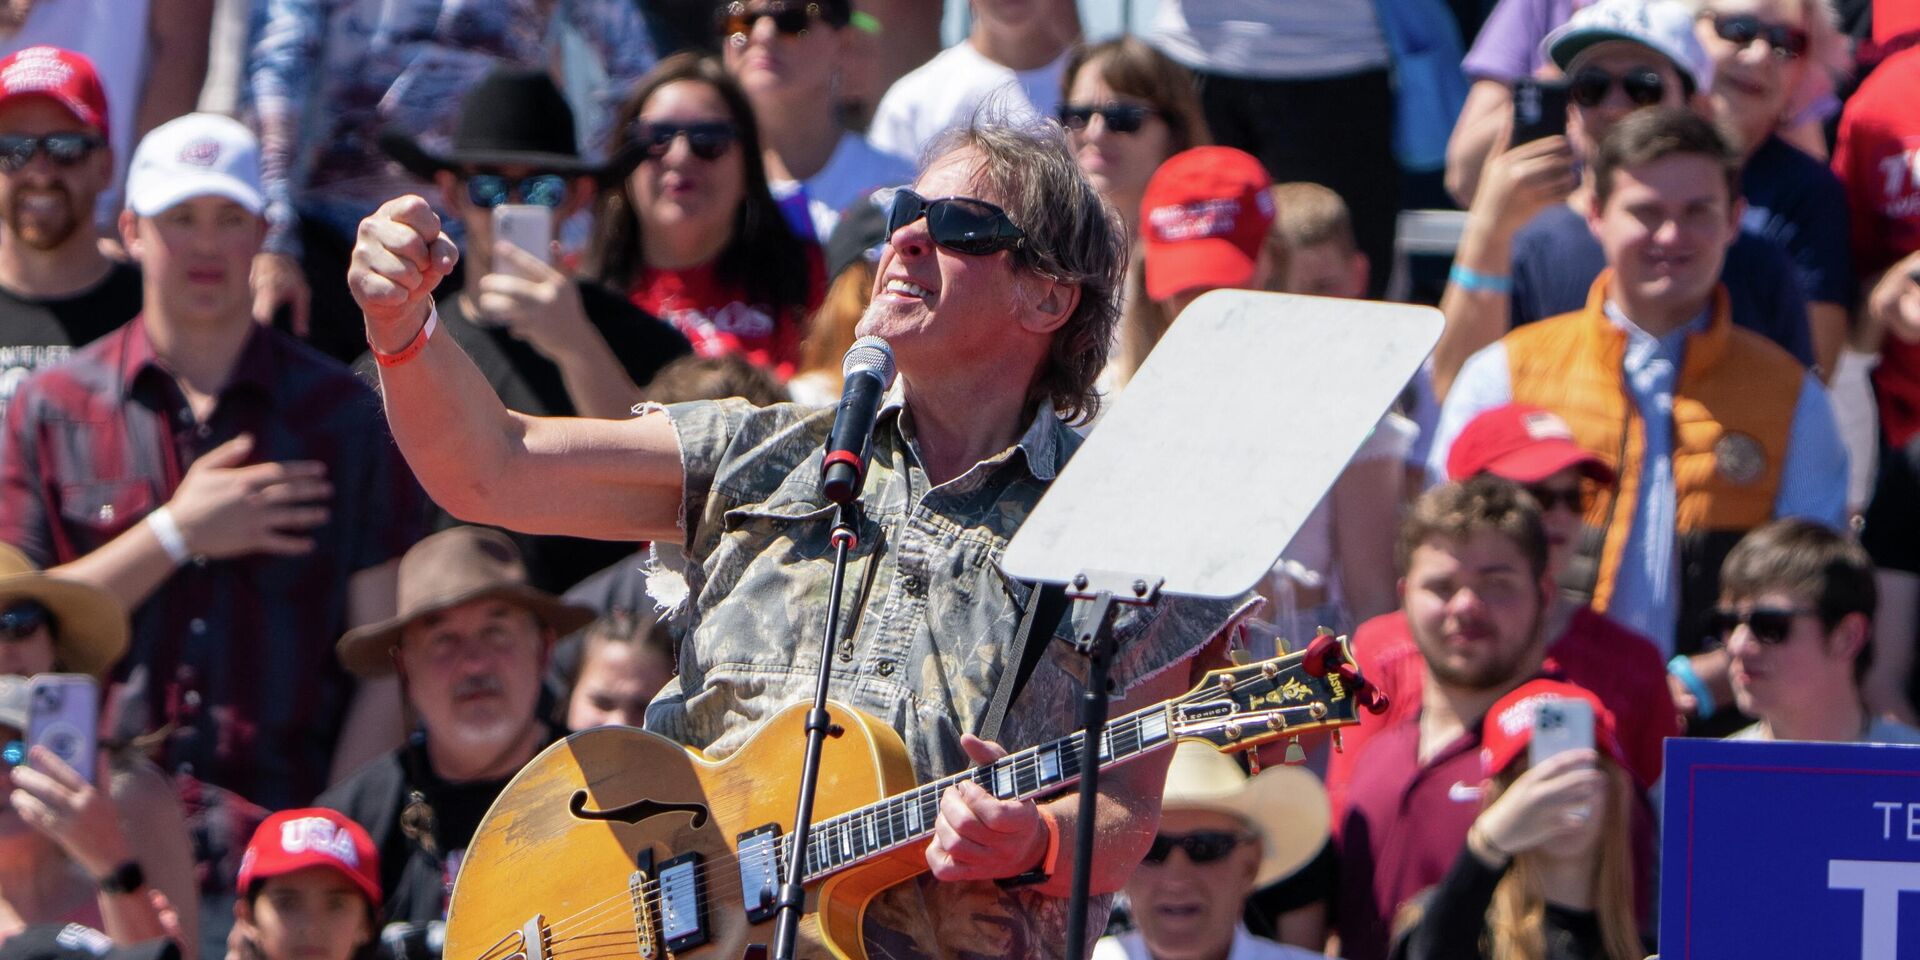 Рок-музыкант Тед Ньюджент выступает на предвыборном митинге Дональда Трампа в Уэйко, штат Техас, 25 марта 2023 года - ИноСМИ, 1920, 27.03.2023